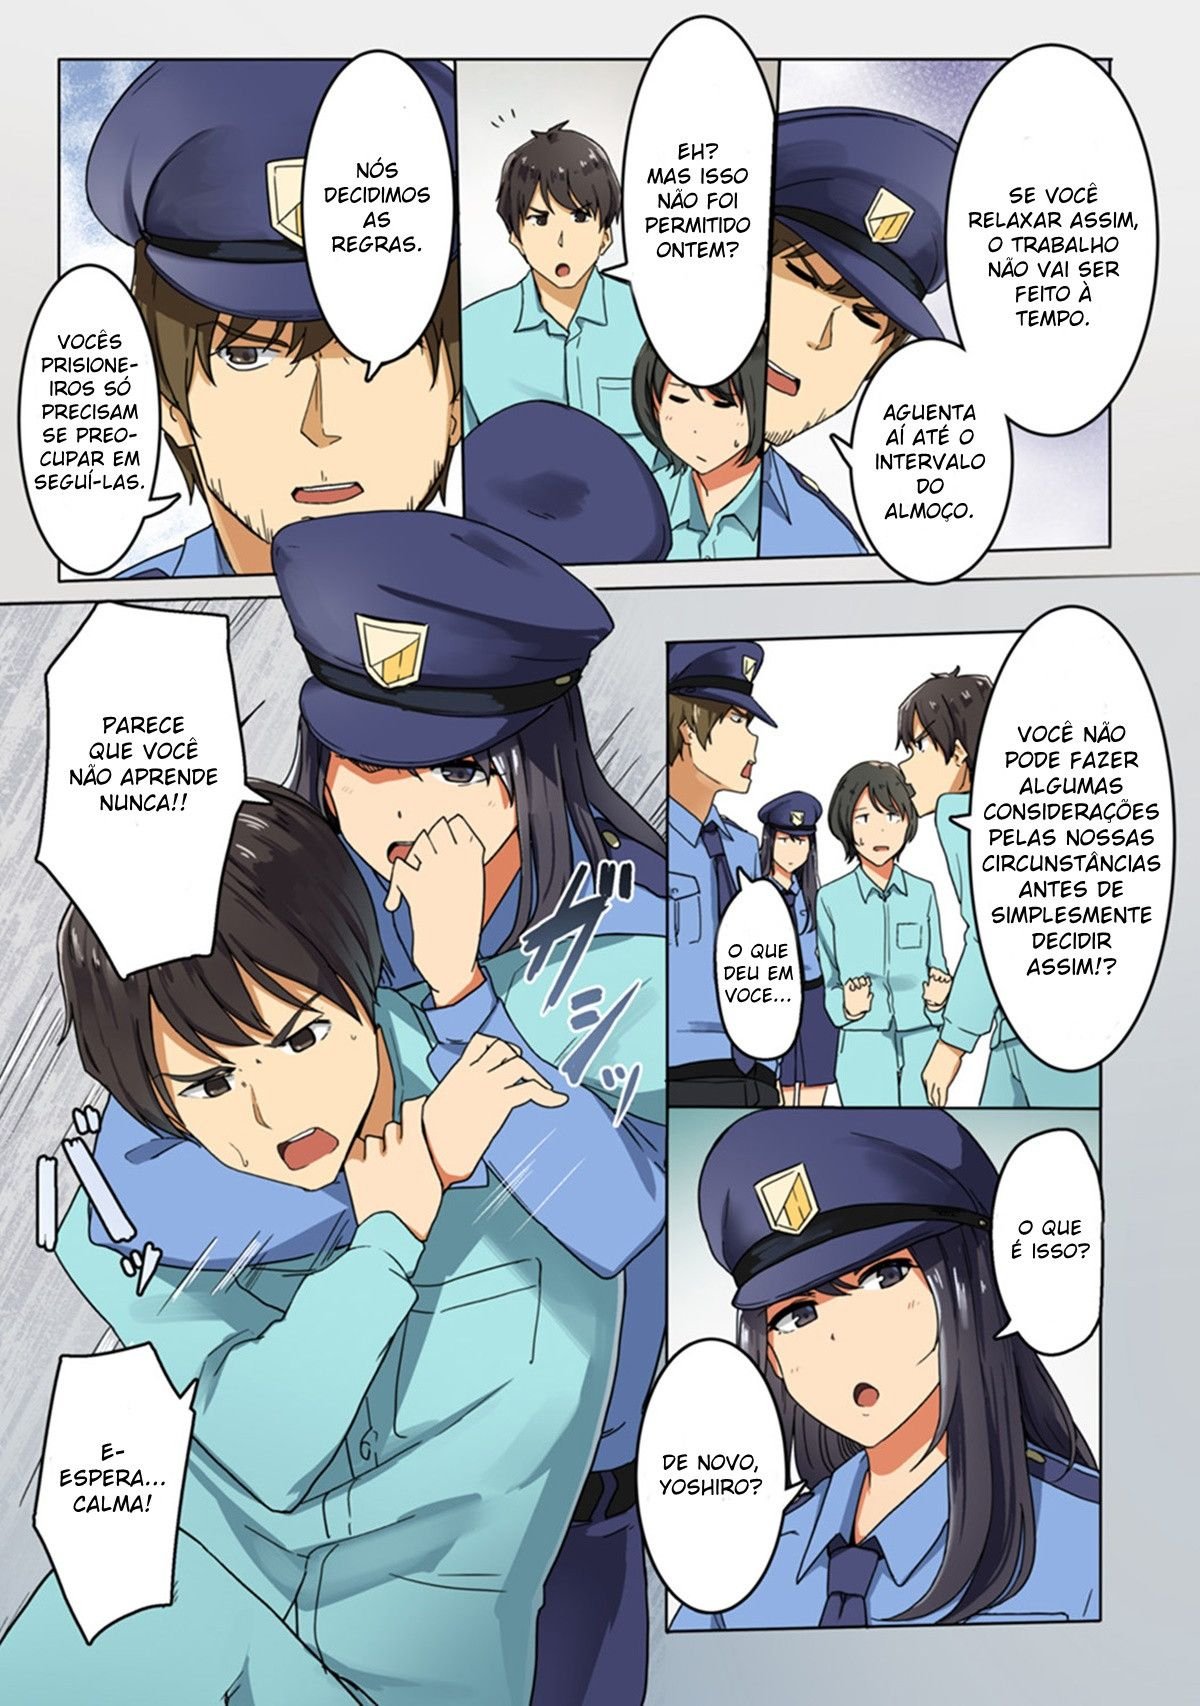 [Wakamatsu] Forçadas a Aceitar a Submissão na Prisão 2 - Foto 4